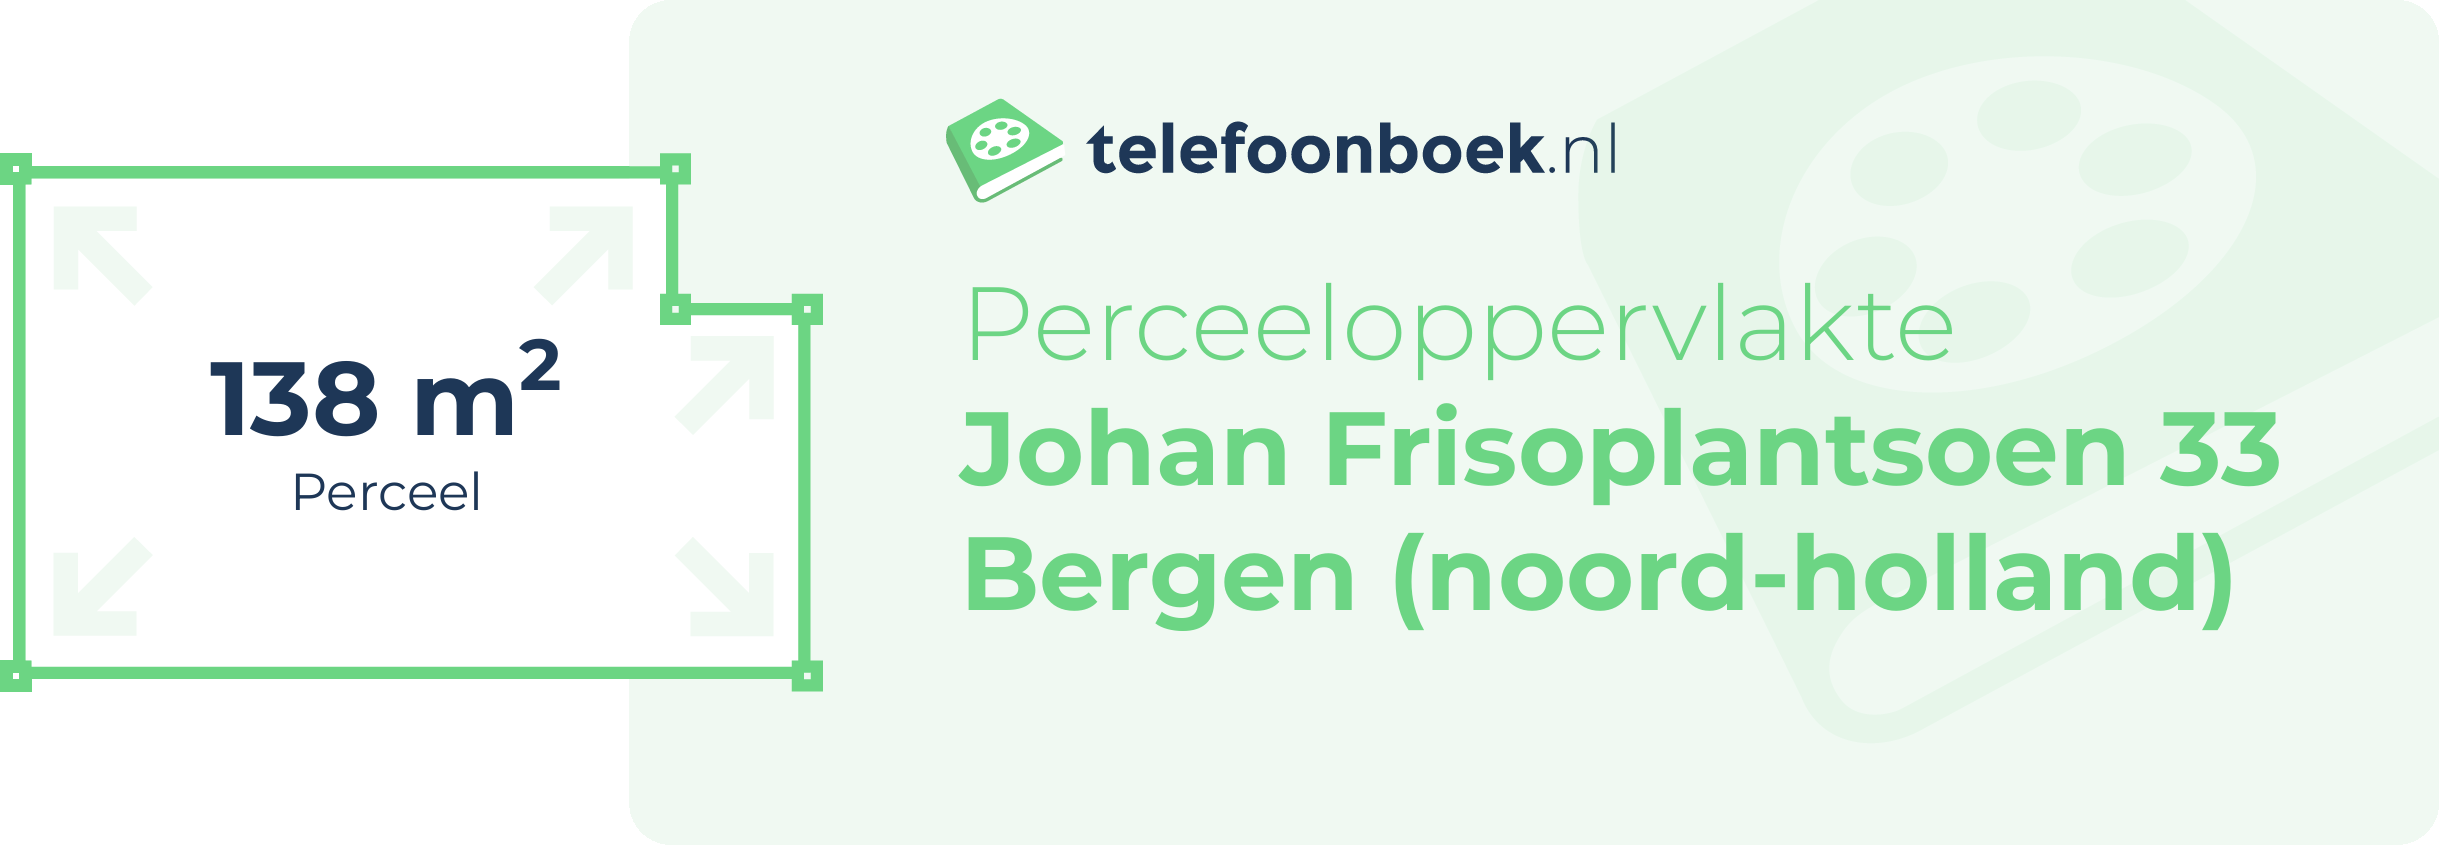 Perceeloppervlakte Johan Frisoplantsoen 33 Bergen (Noord-Holland)